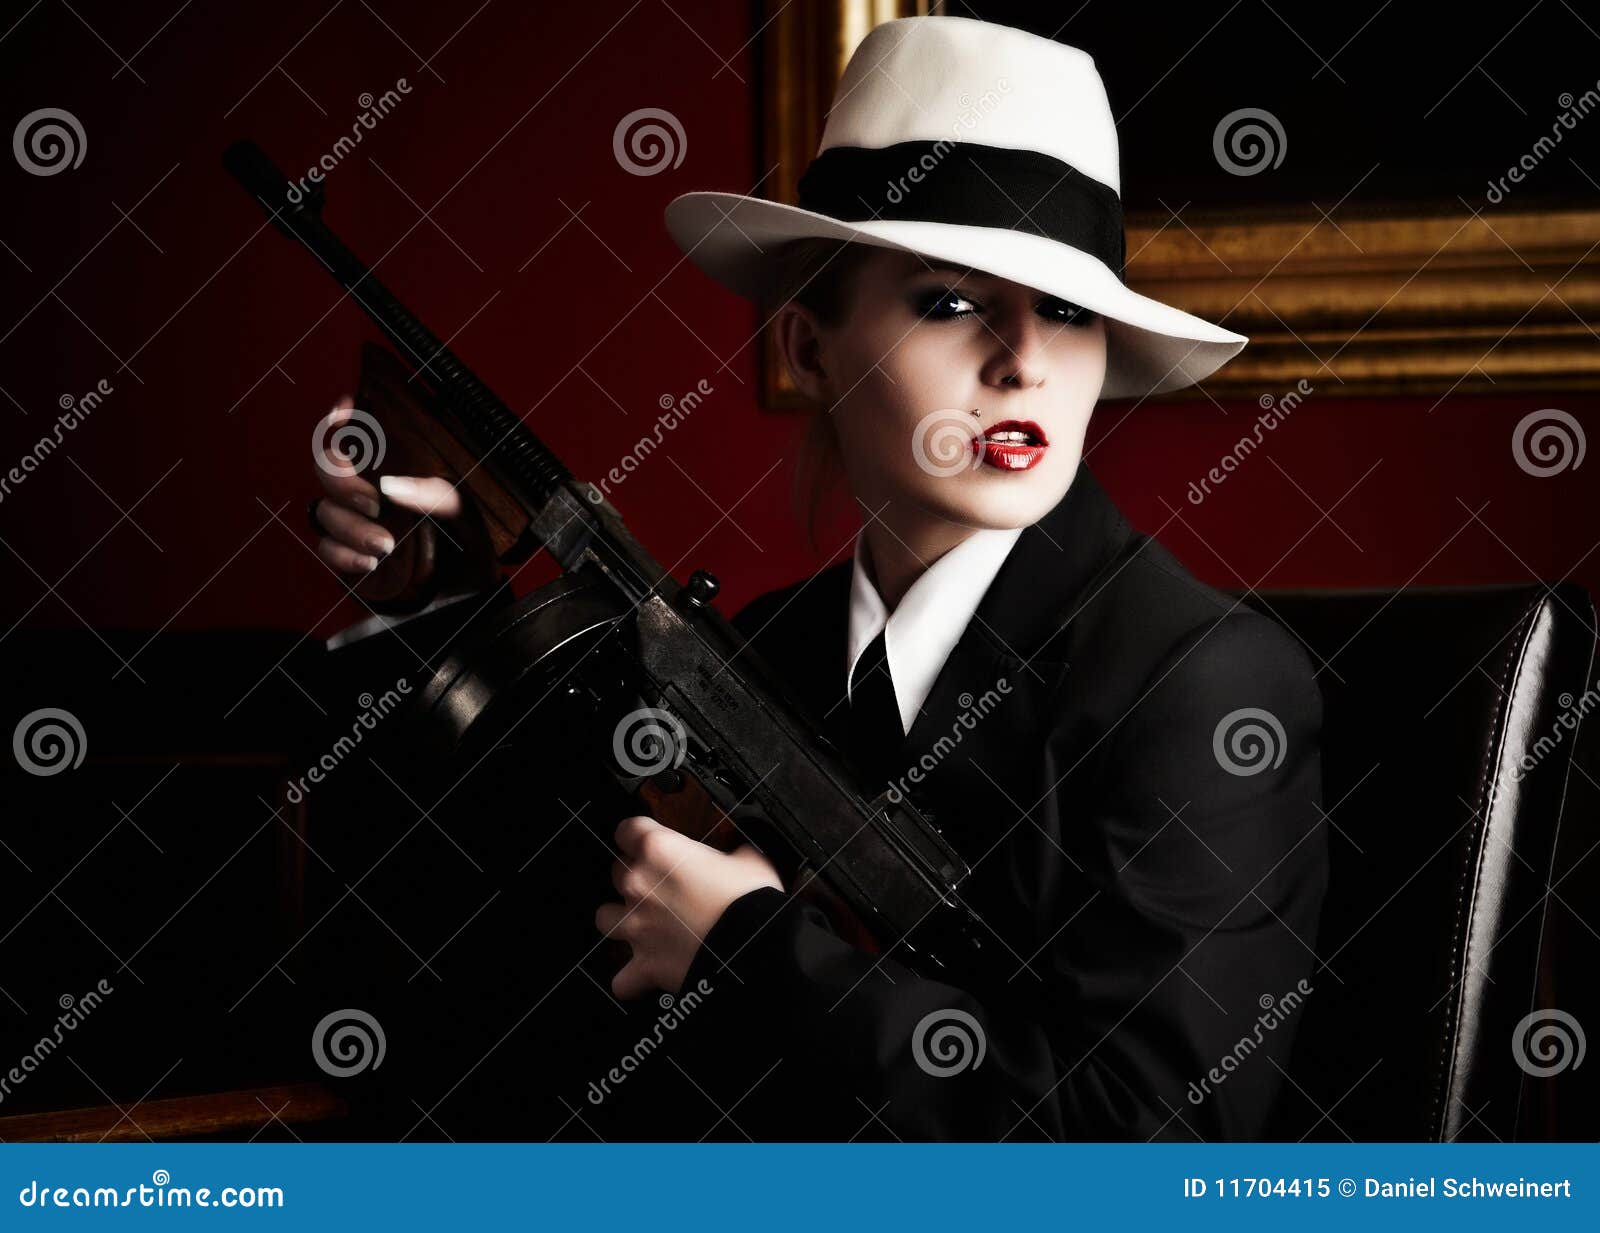 female gangster